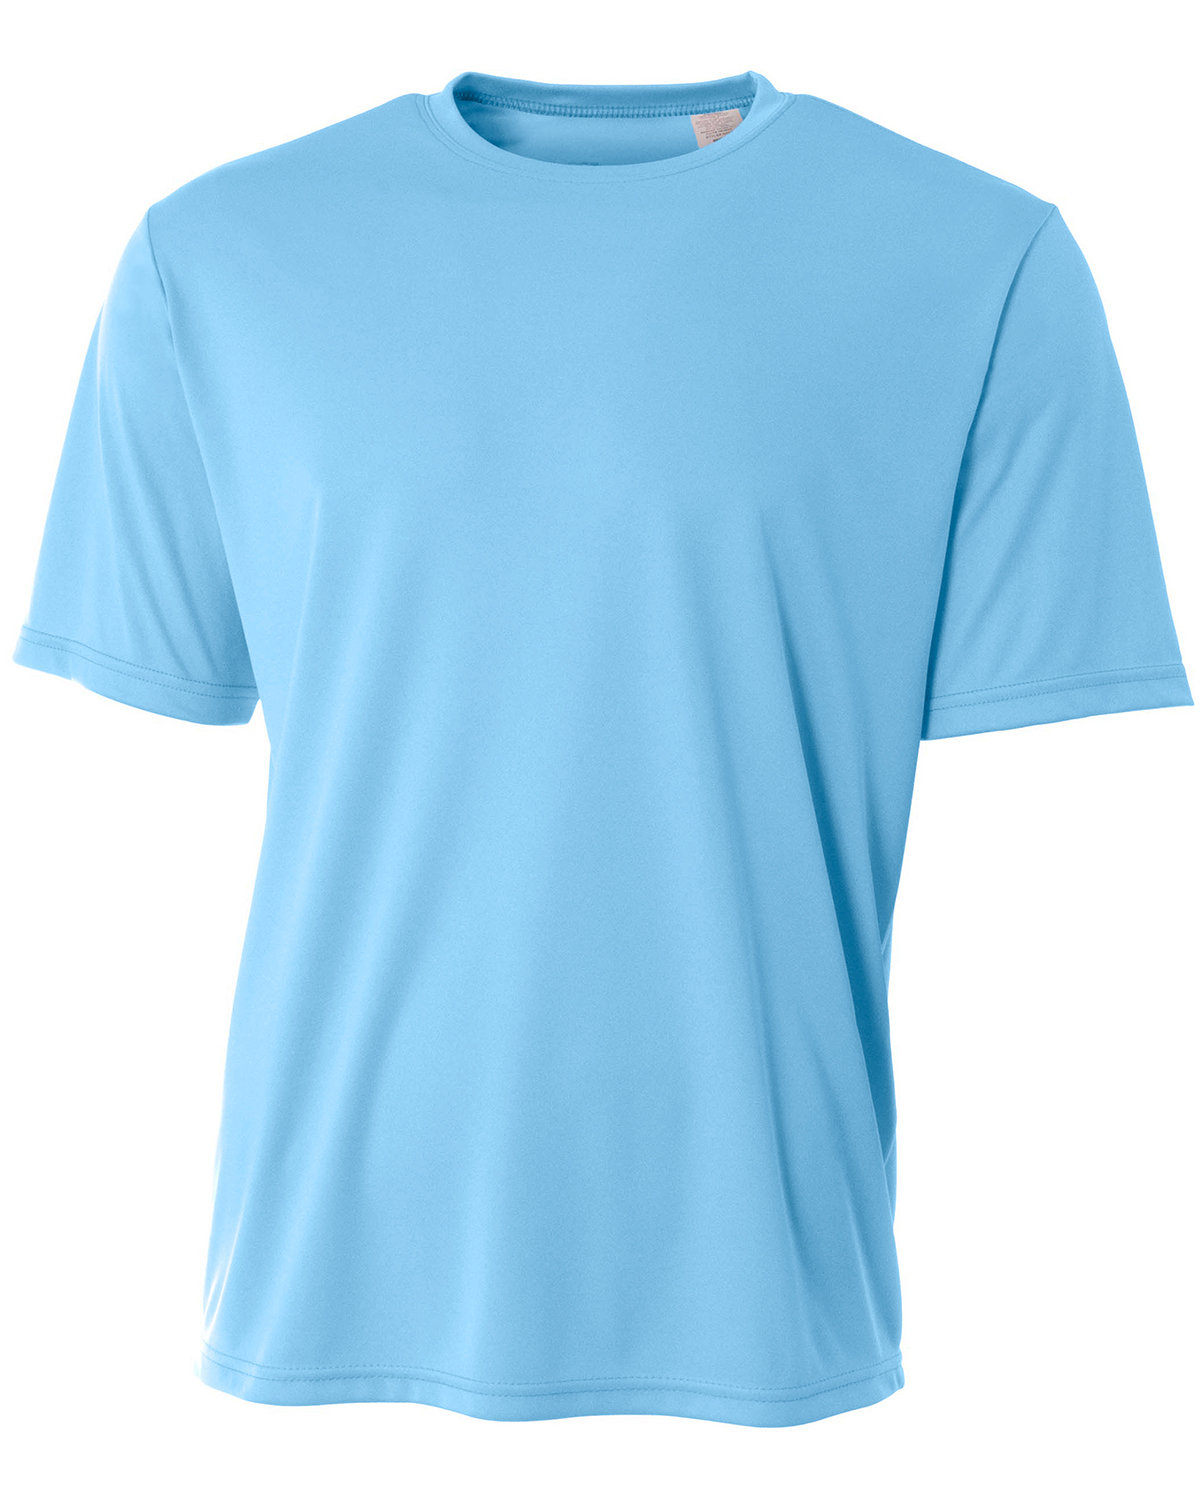 A4 Men's Sprint Performance T-Shirt LIGHT BLUE 